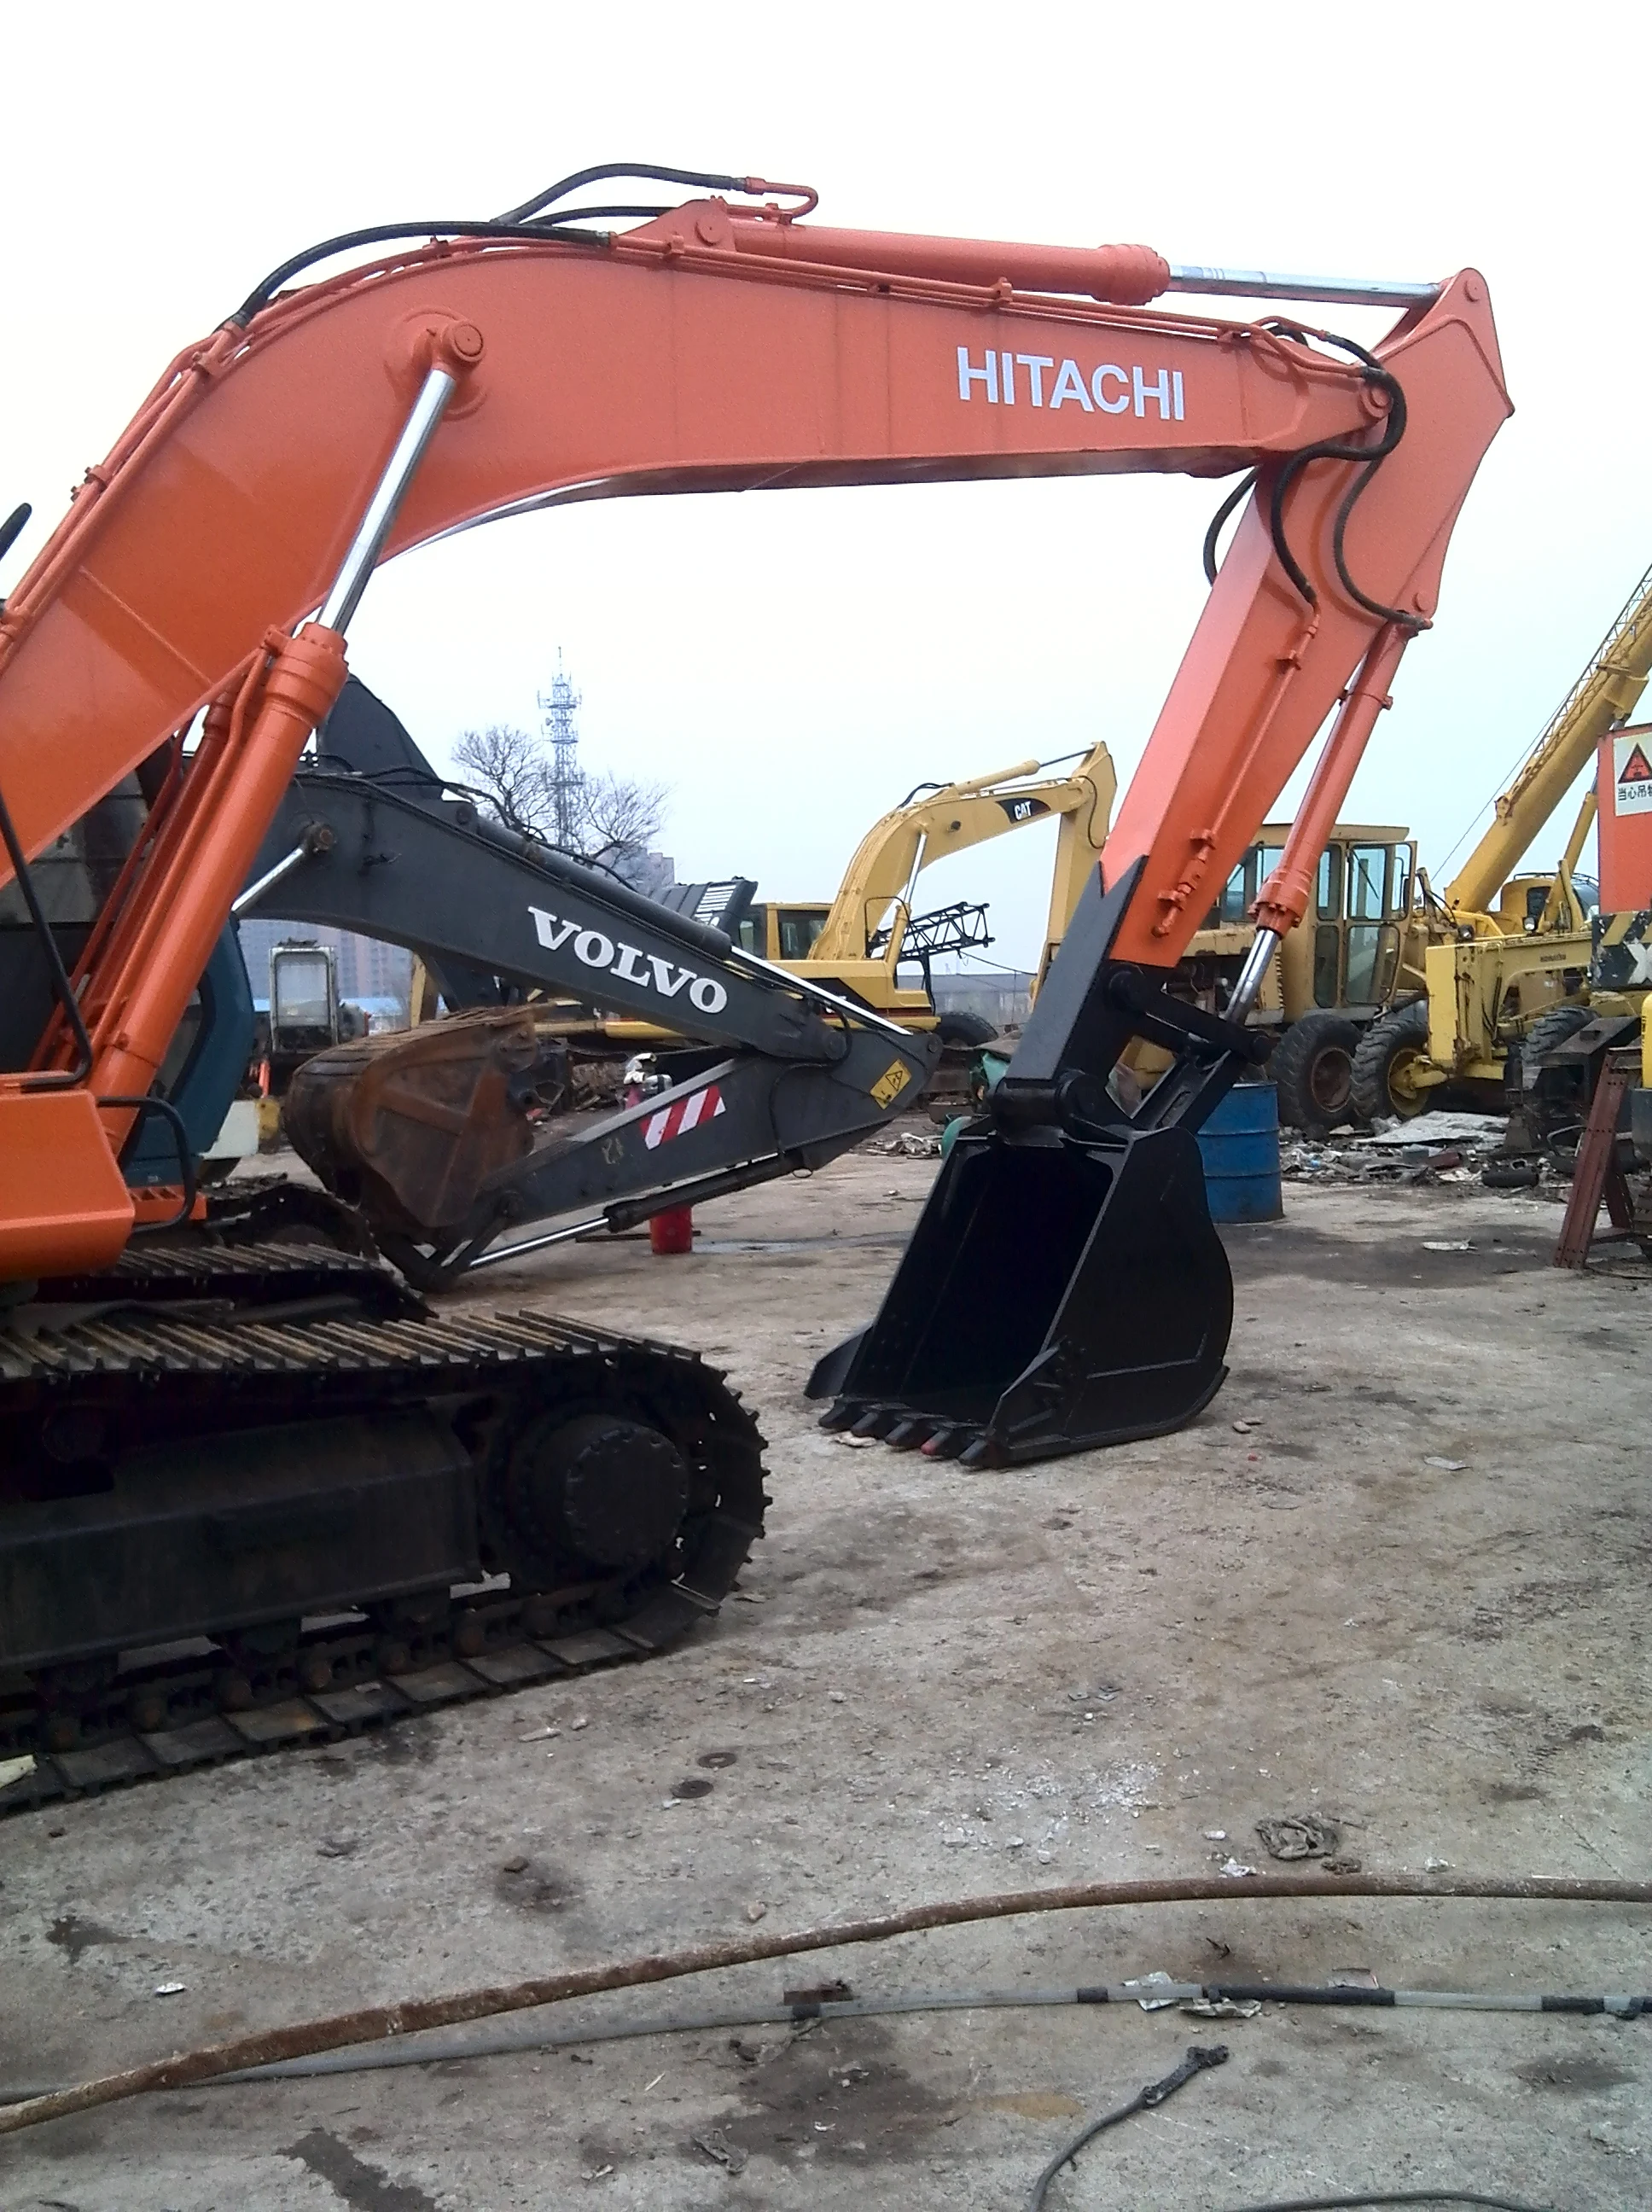 
20 tons japan original used hitachi excavator ex200-2 for sale 